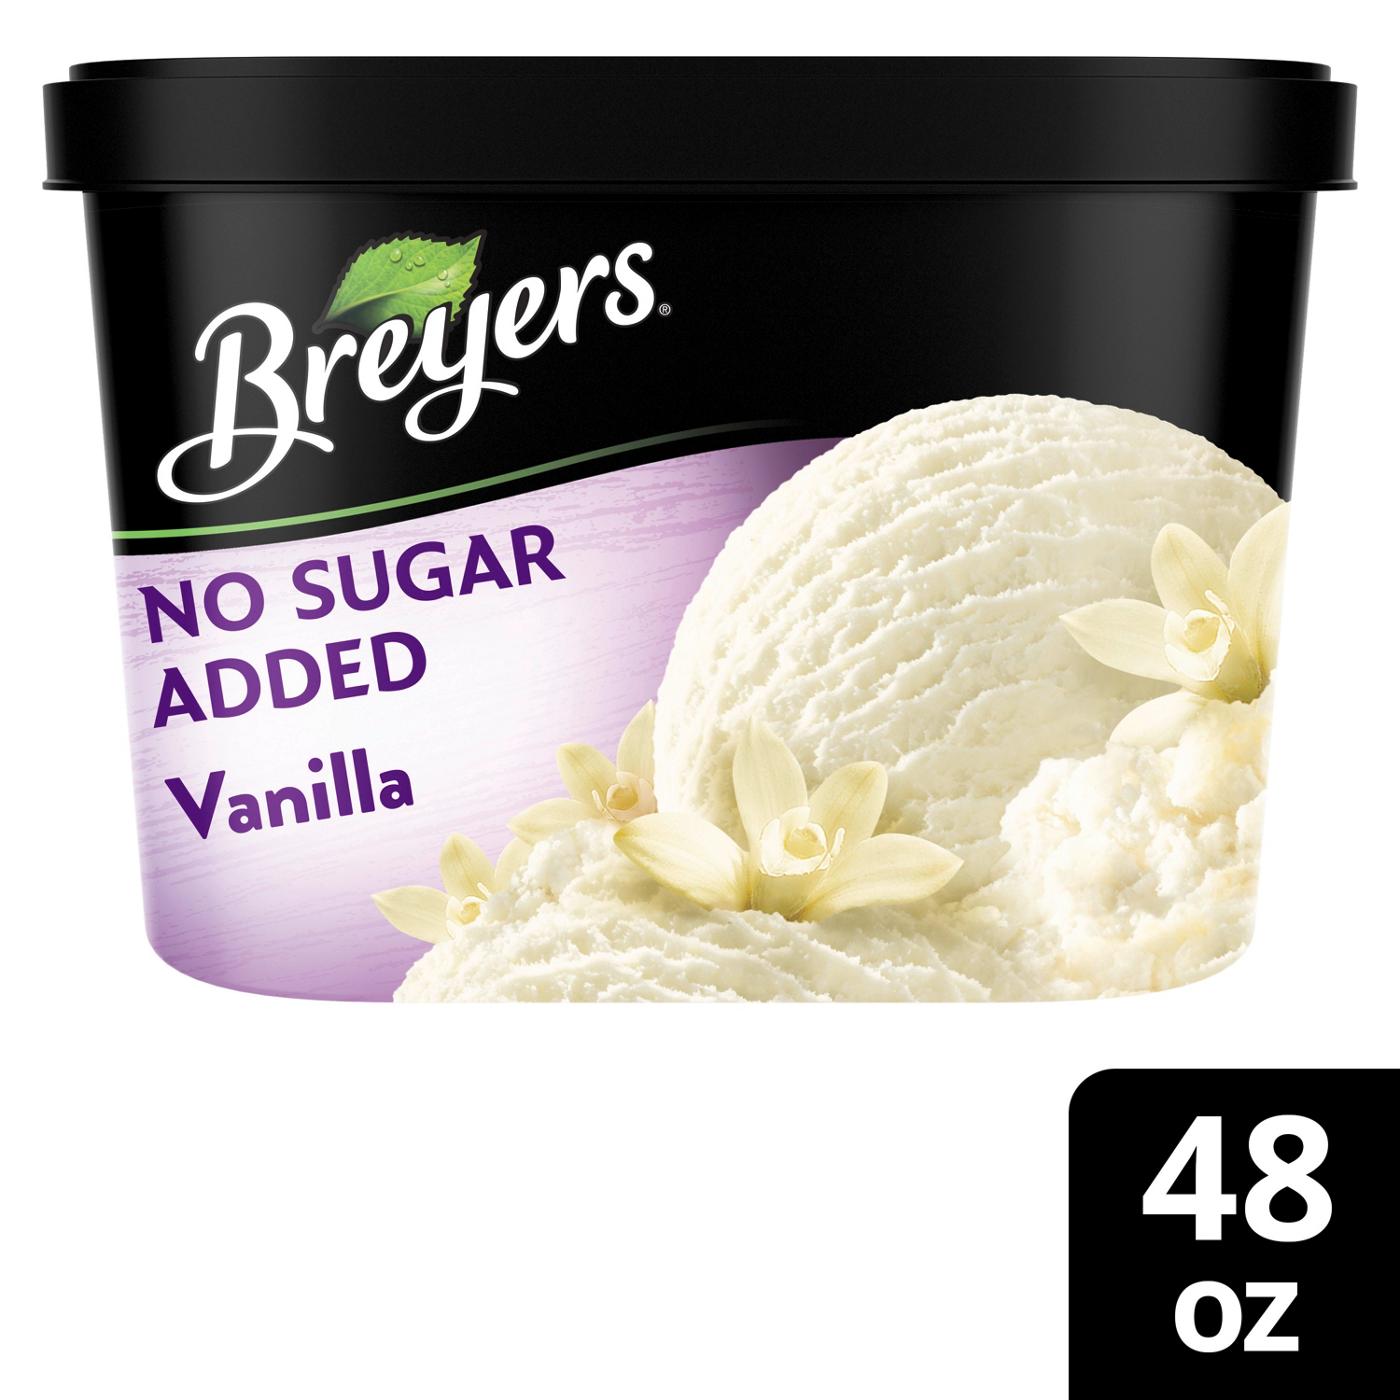 Breyers No Sugar Added Vanilla Frozen Dairy Dessert; image 8 of 9